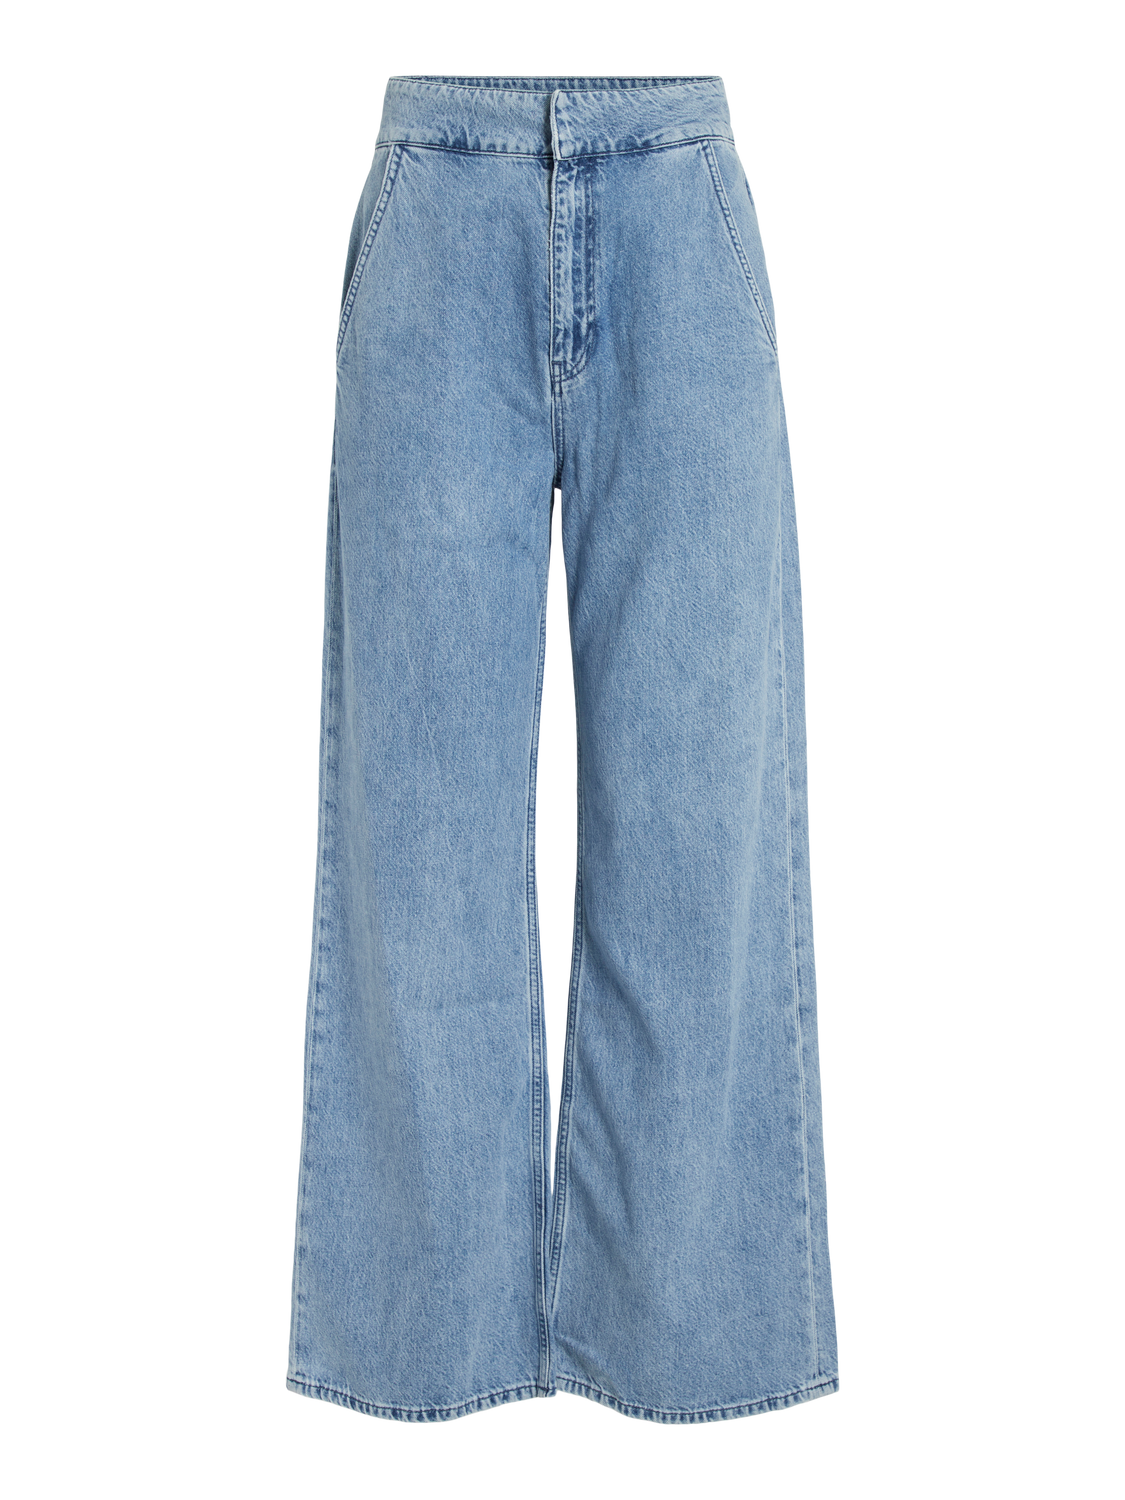 VIBELEN Jeans - Light Blue Denim